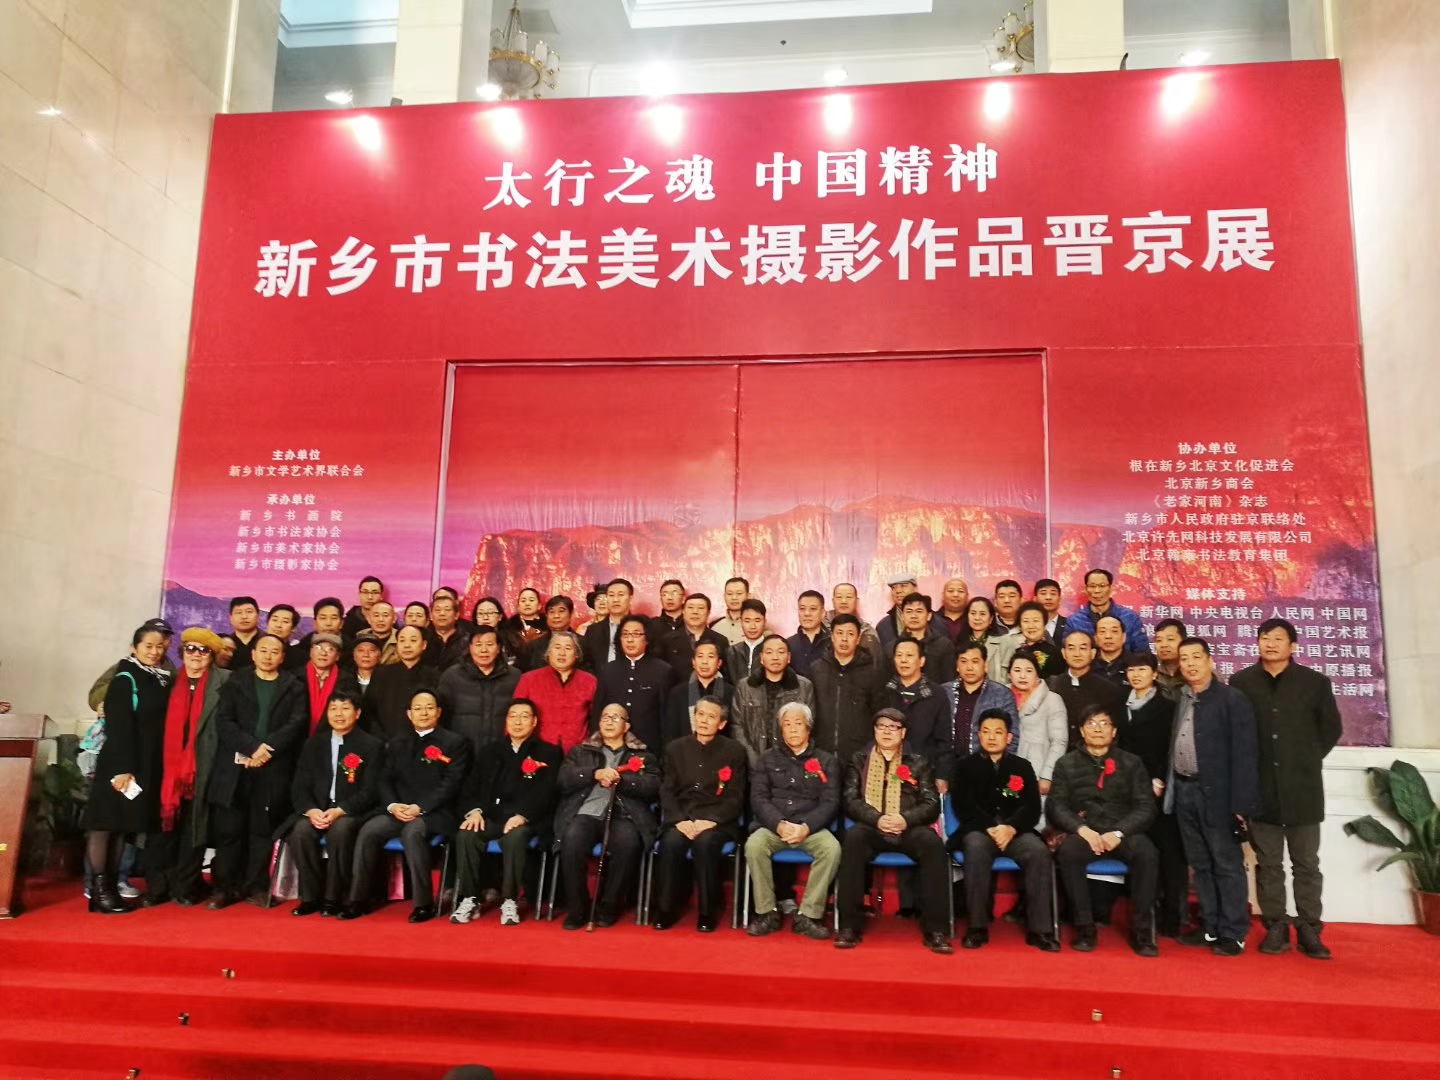  老家河南网-新乡市书法美术摄影作品晋京展在北京举行